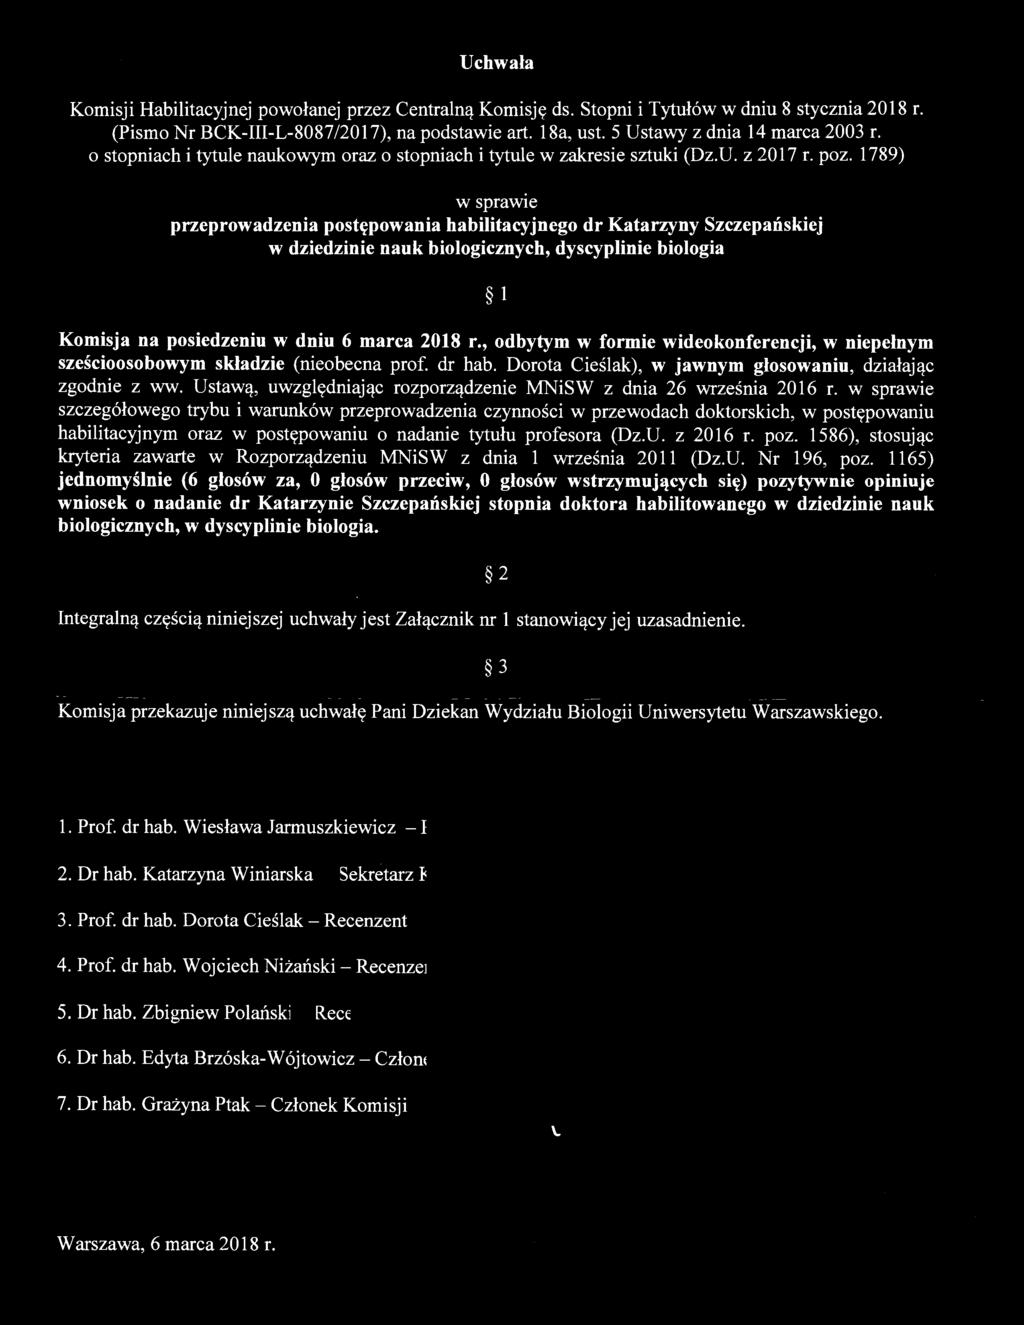 Uchwała Komisji Habilitacyjnej powołanej przez Centralną Ko misj ę ds. Stopni i Tytułów w dniu 8 stycznia 2018 r. (Pismo Nr BCK-III-L-8087/2017), na podstawie art. 18a, ust.